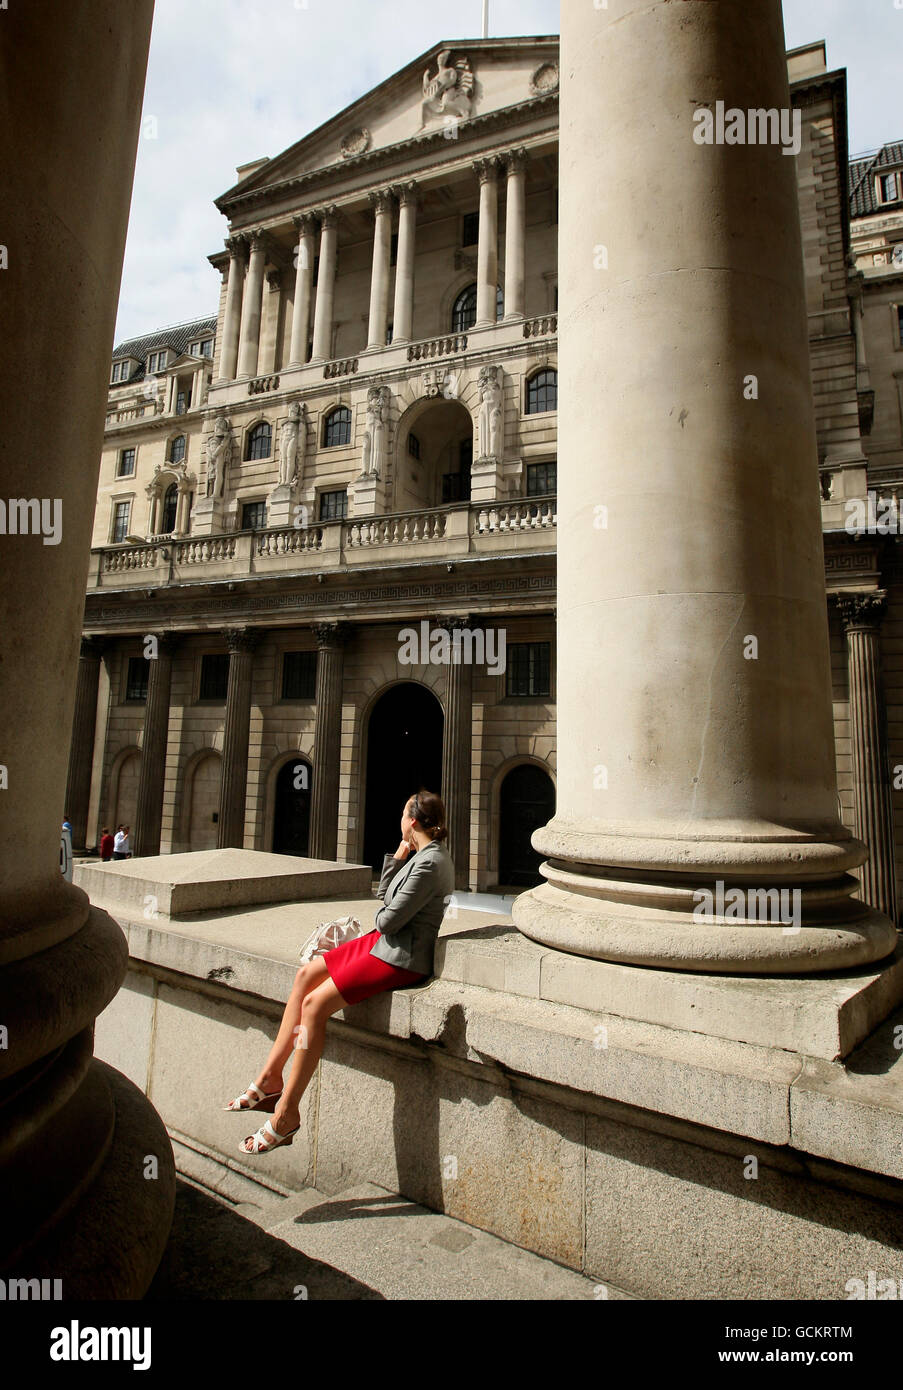 Ein Büroangestellter spricht auf einem Mobiltelefon außerhalb der Bank of England, im Zentrum Londons. Der Gouverneur der Bank of England, Mervyn King, warnte vor einer „abgehackten Erholung“ für die britische Wirtschaft heute, da er die Haushalte auf ein langsameres Wachstum und eine festere Inflation als erwartet abstellte. Stockfoto